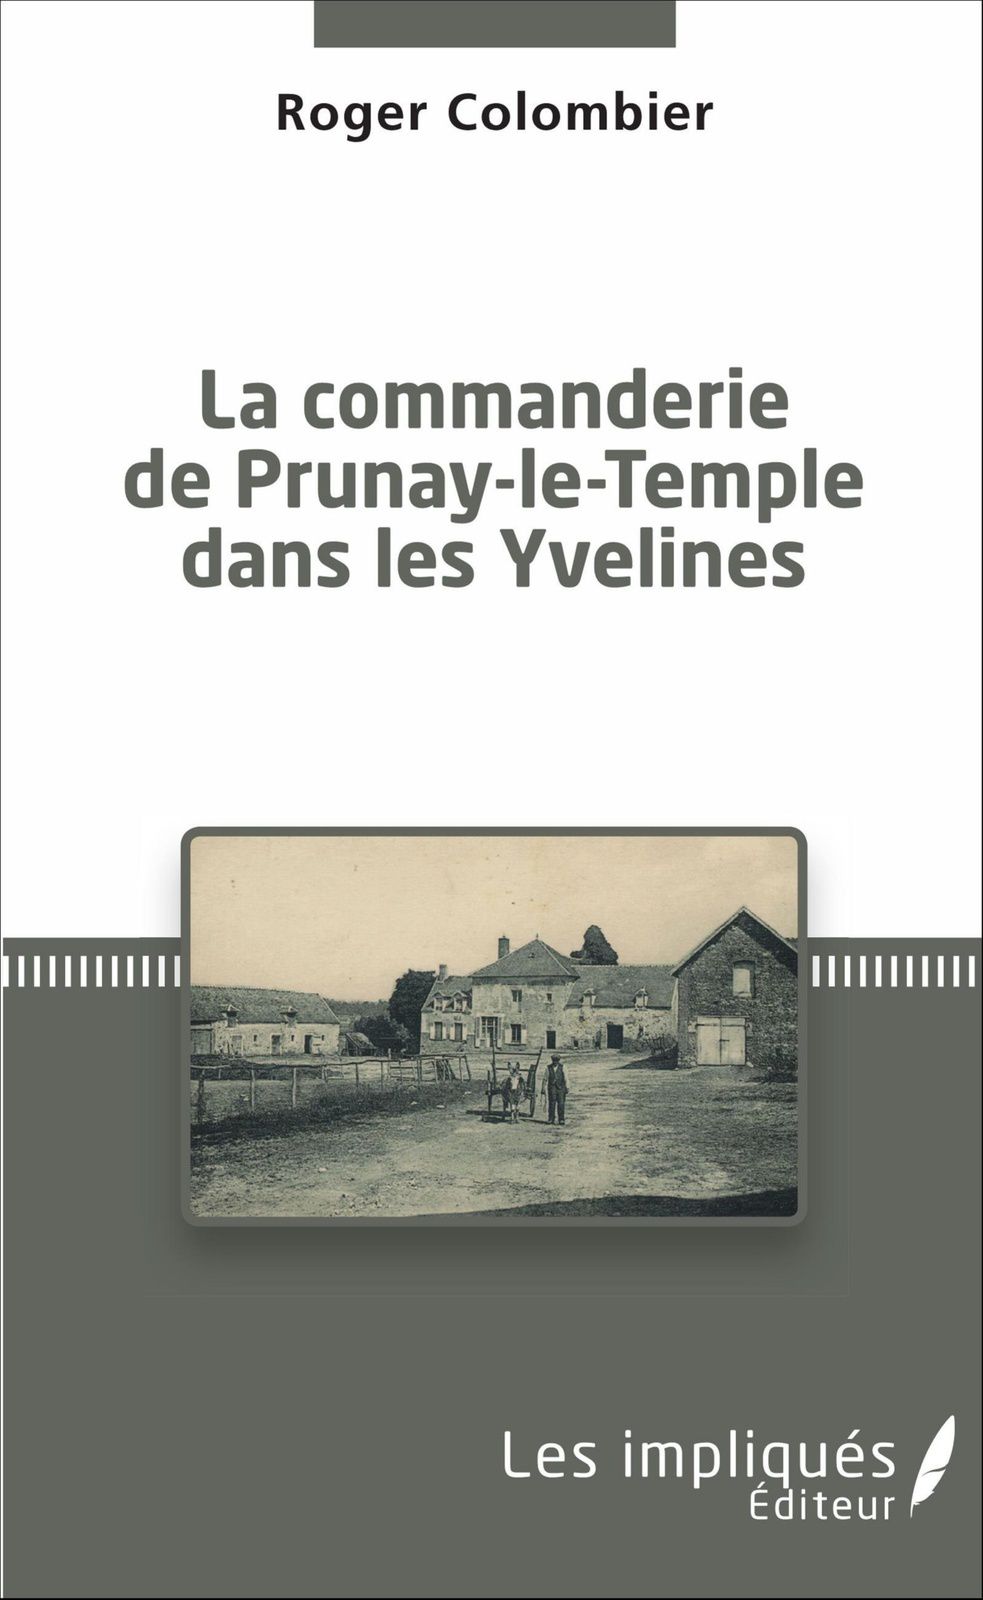 La commanderie de Prunay-le-Temple dans les Yvelines